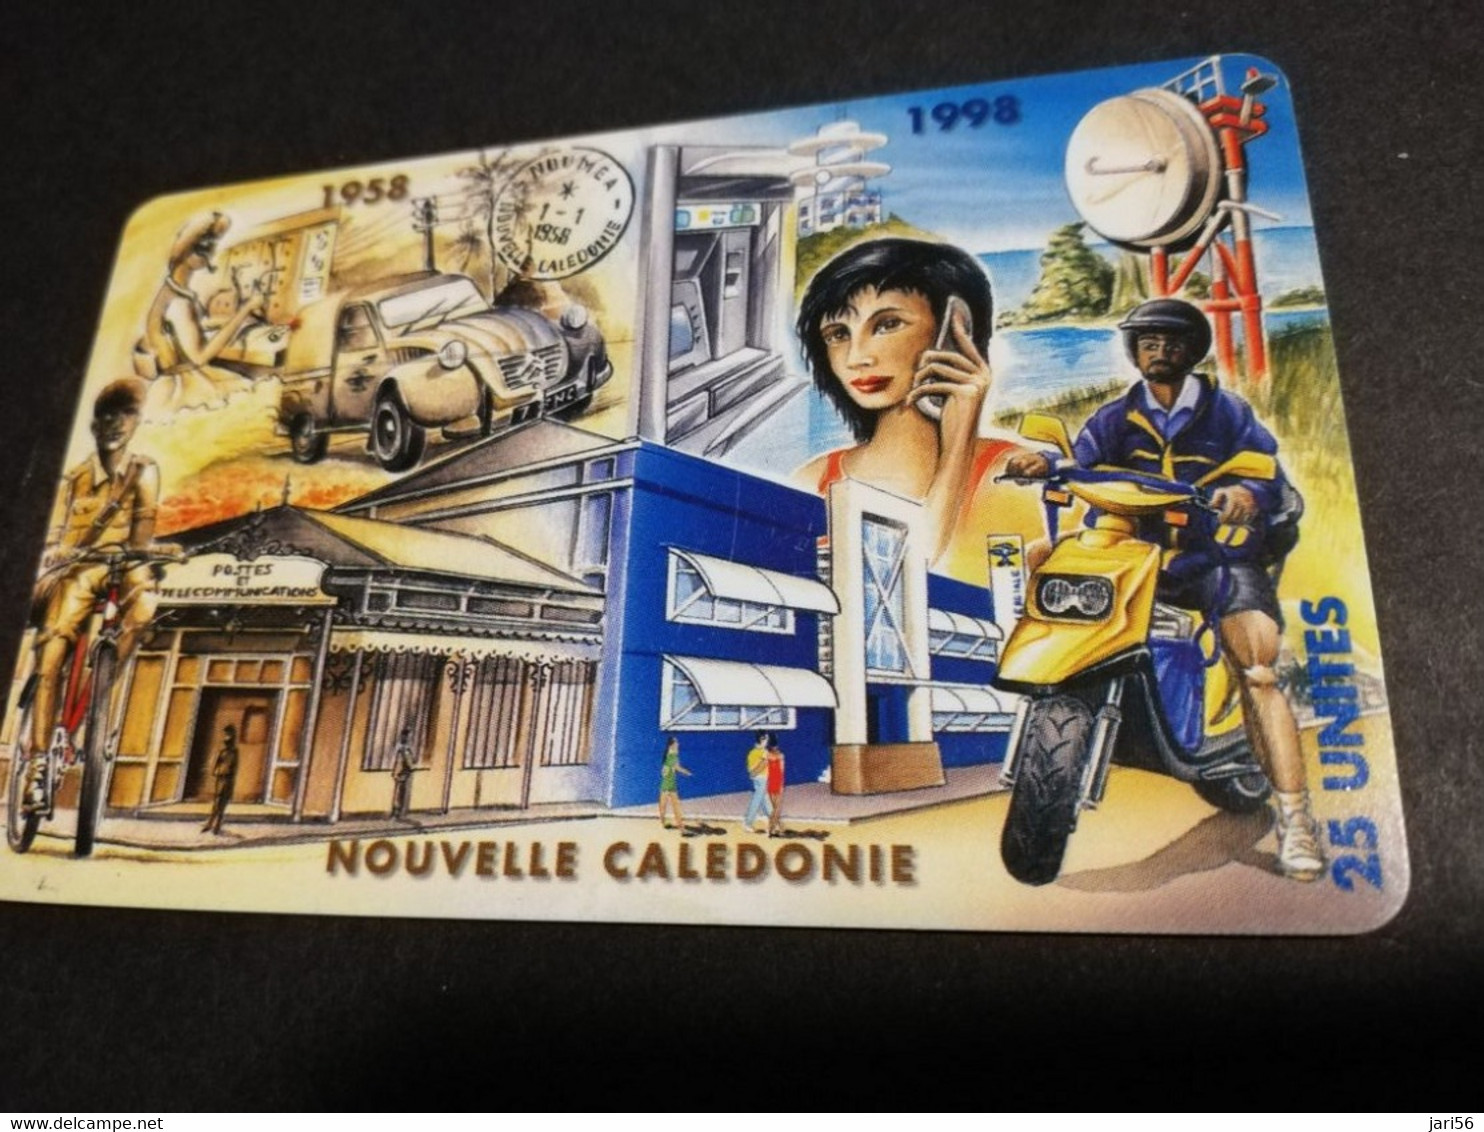 NOUVELLE CALEDONIA  CHIP CARD 25  UNITS   40EME ANNIVERSAIRE 1958-1998       ** 4186 ** - Neukaledonien